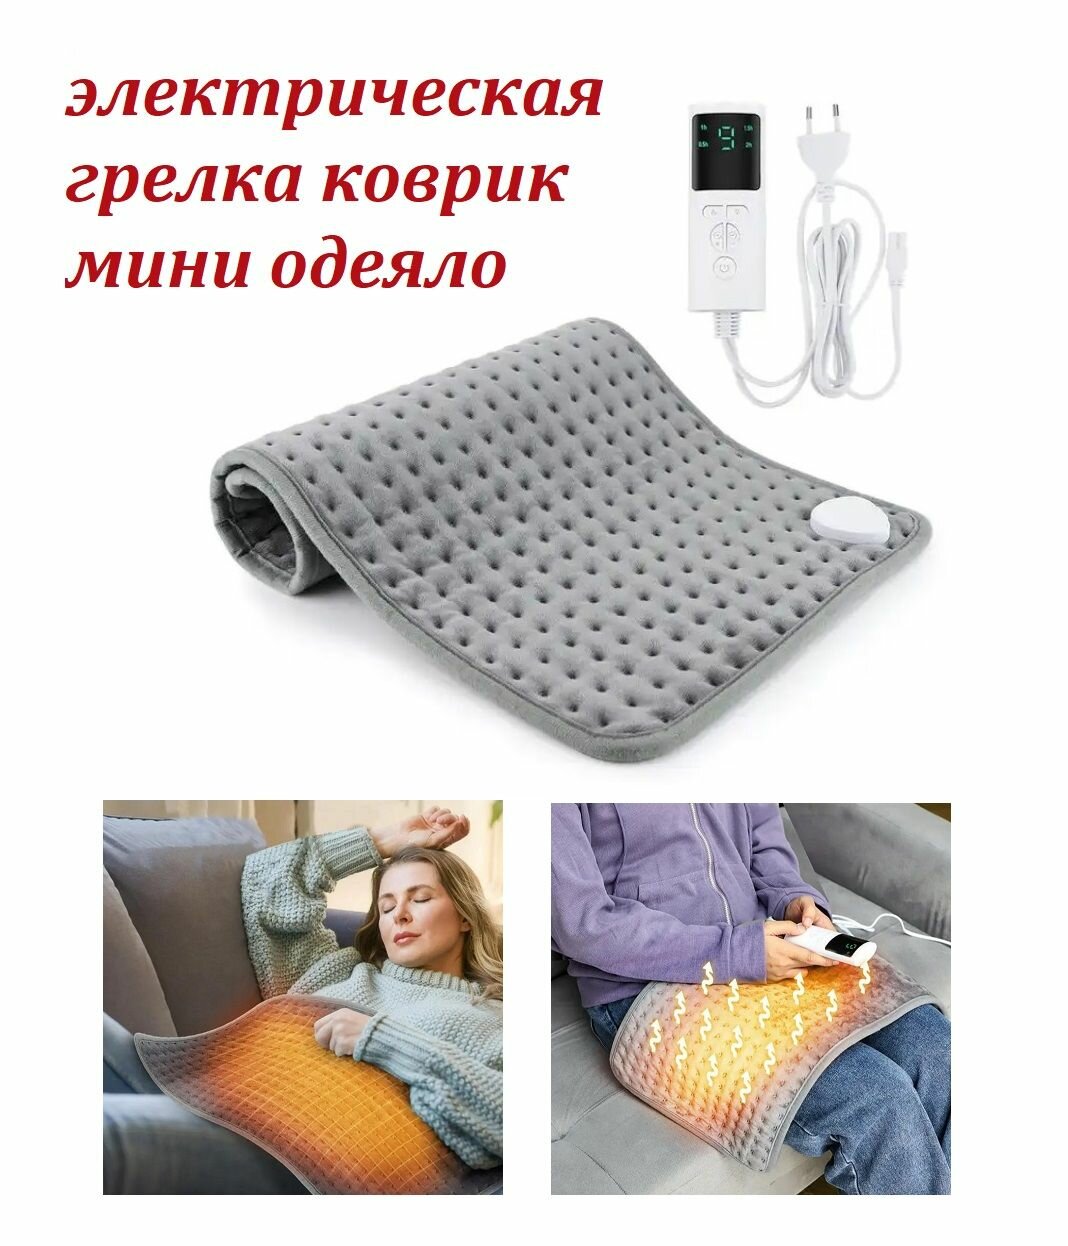 Электрическая грелка коврик с пультом управления, с регулировкой температуры / Мини одеяло с подогревом